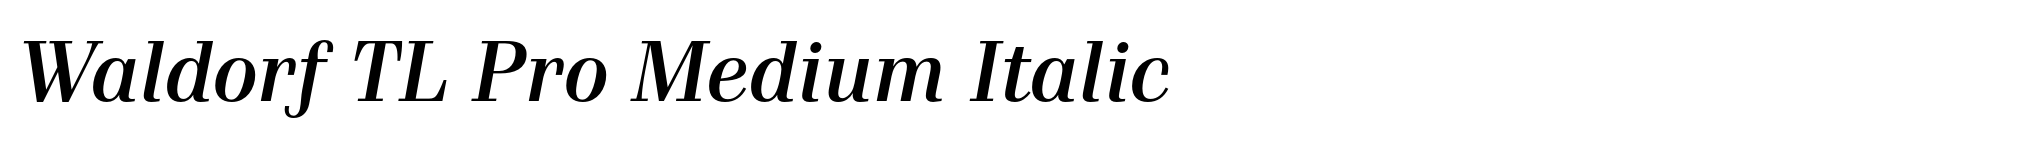 Waldorf TL Pro Medium Italic image